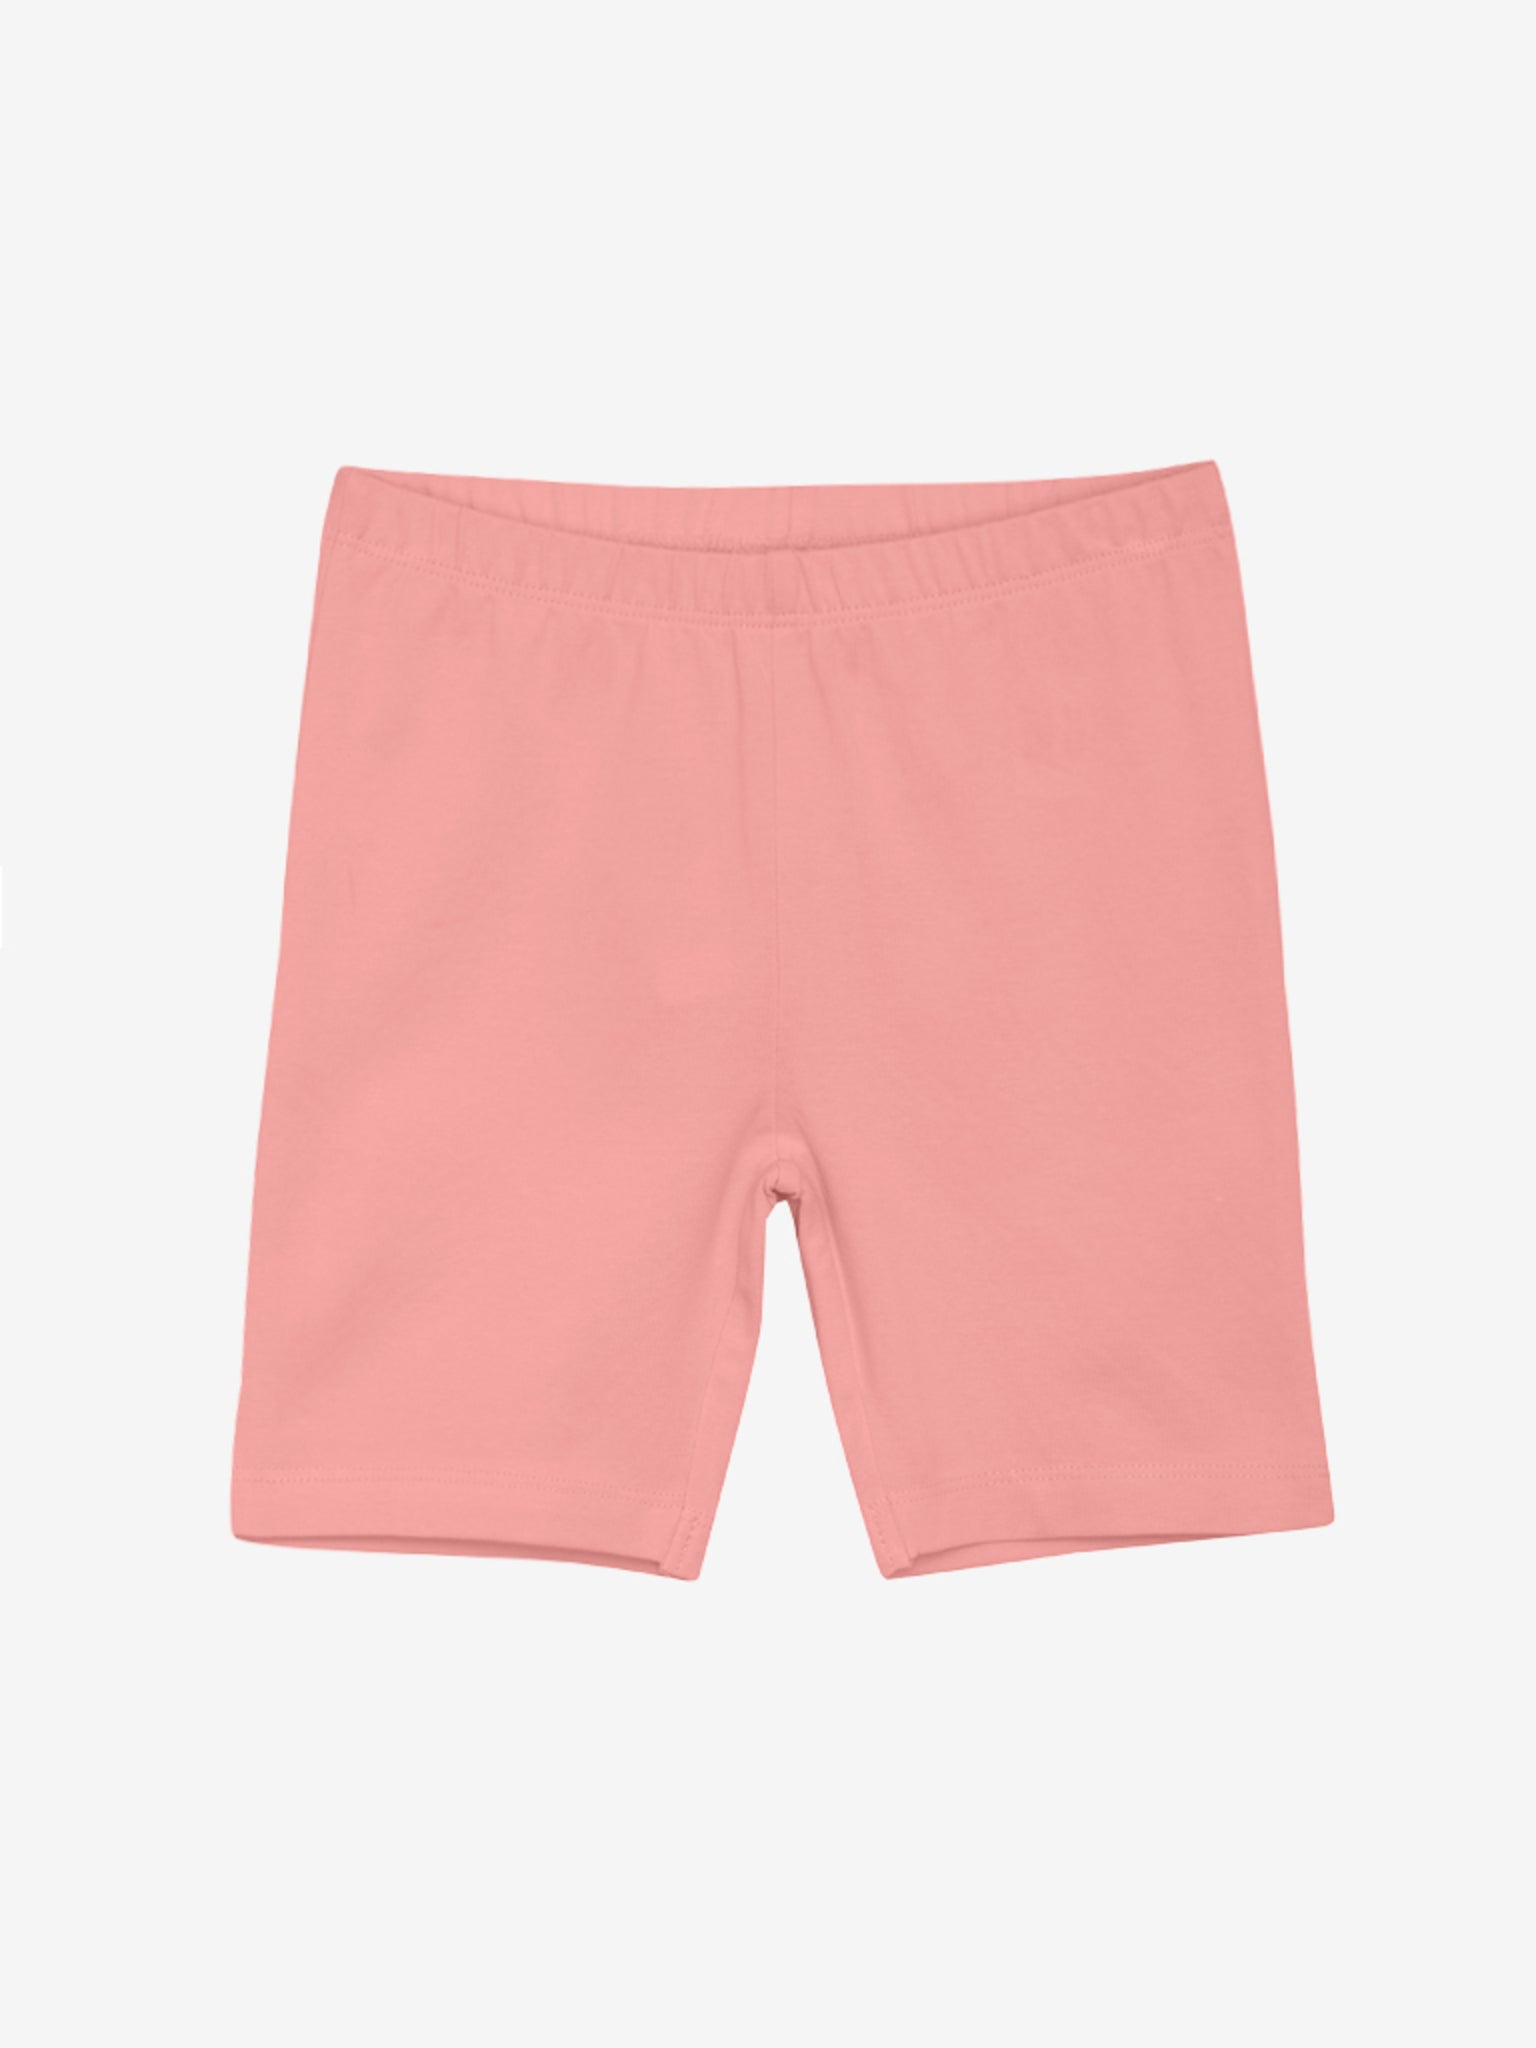 Coole Shorts in rosa für Mädchen von Minymo.